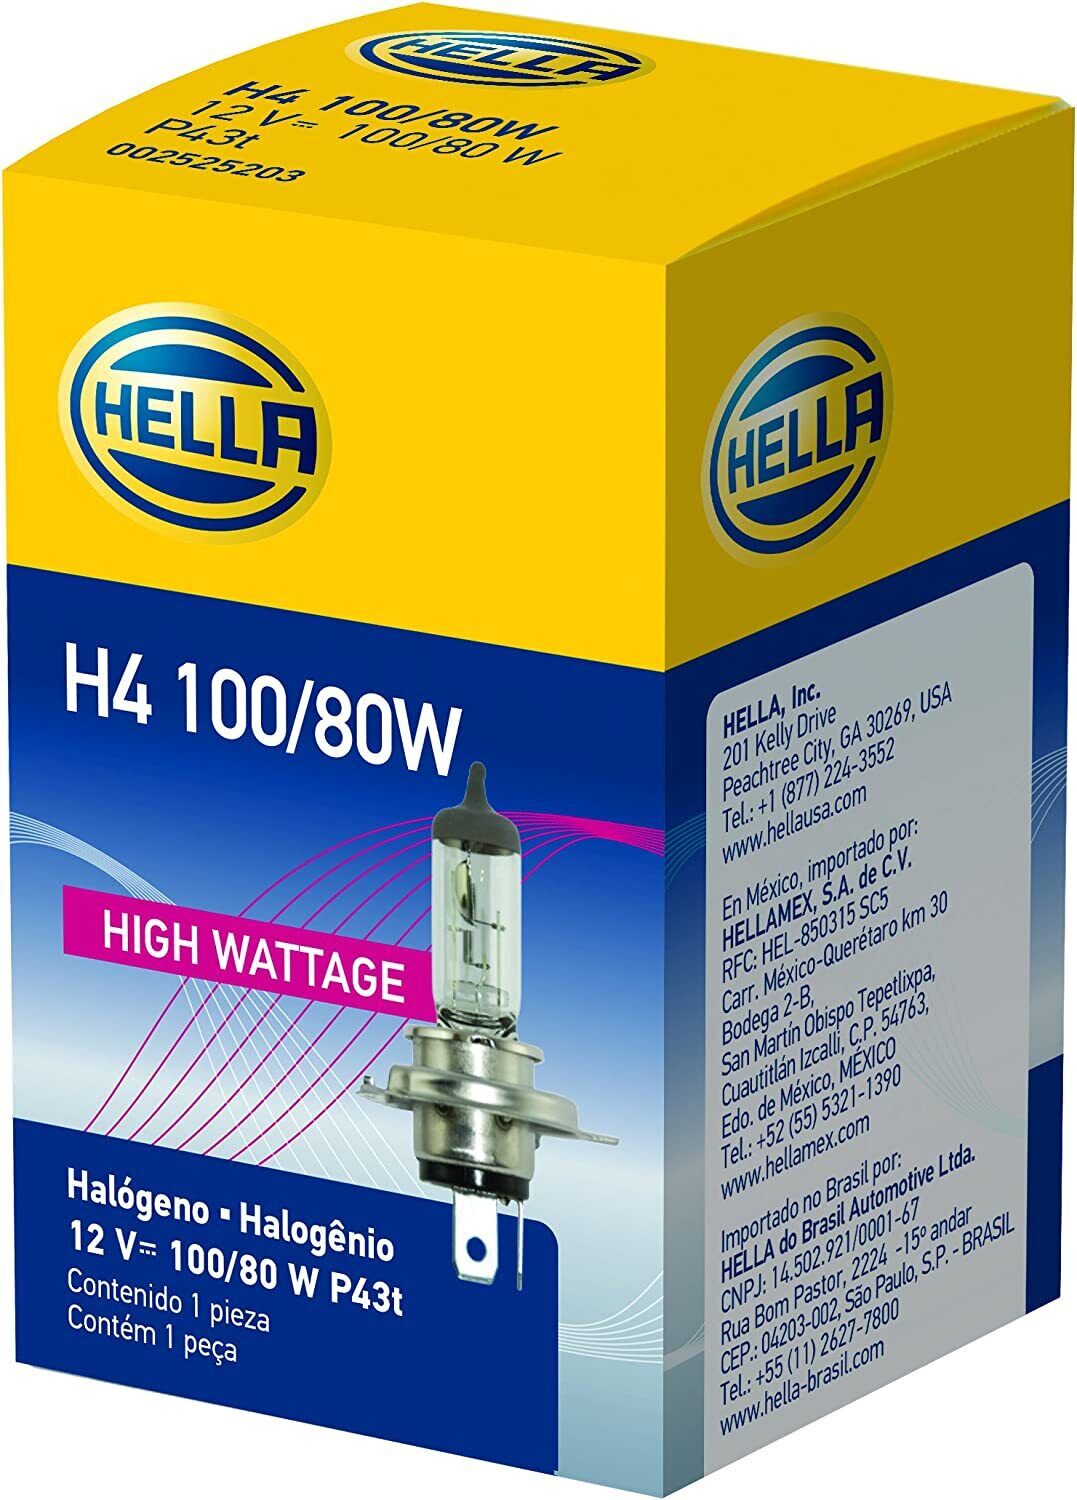 HELLA H4 100/80W High Wattage Bulb, 12V